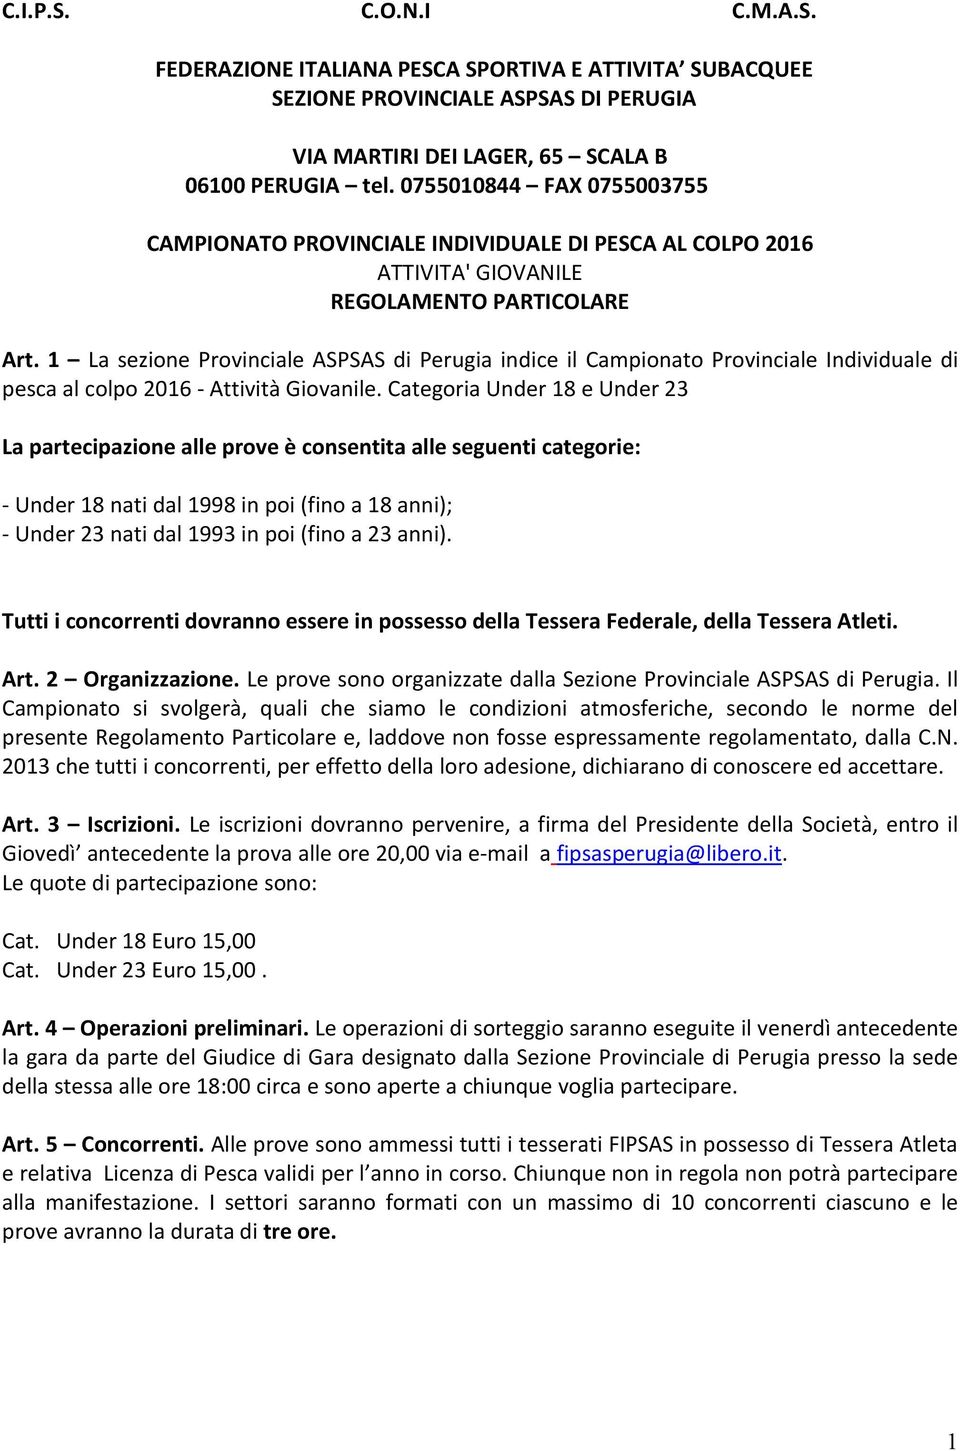 1 La sezione Provinciale ASPSAS di Perugia indice il Campionato Provinciale Individuale di pesca al colpo 2016 - Attività Giovanile.